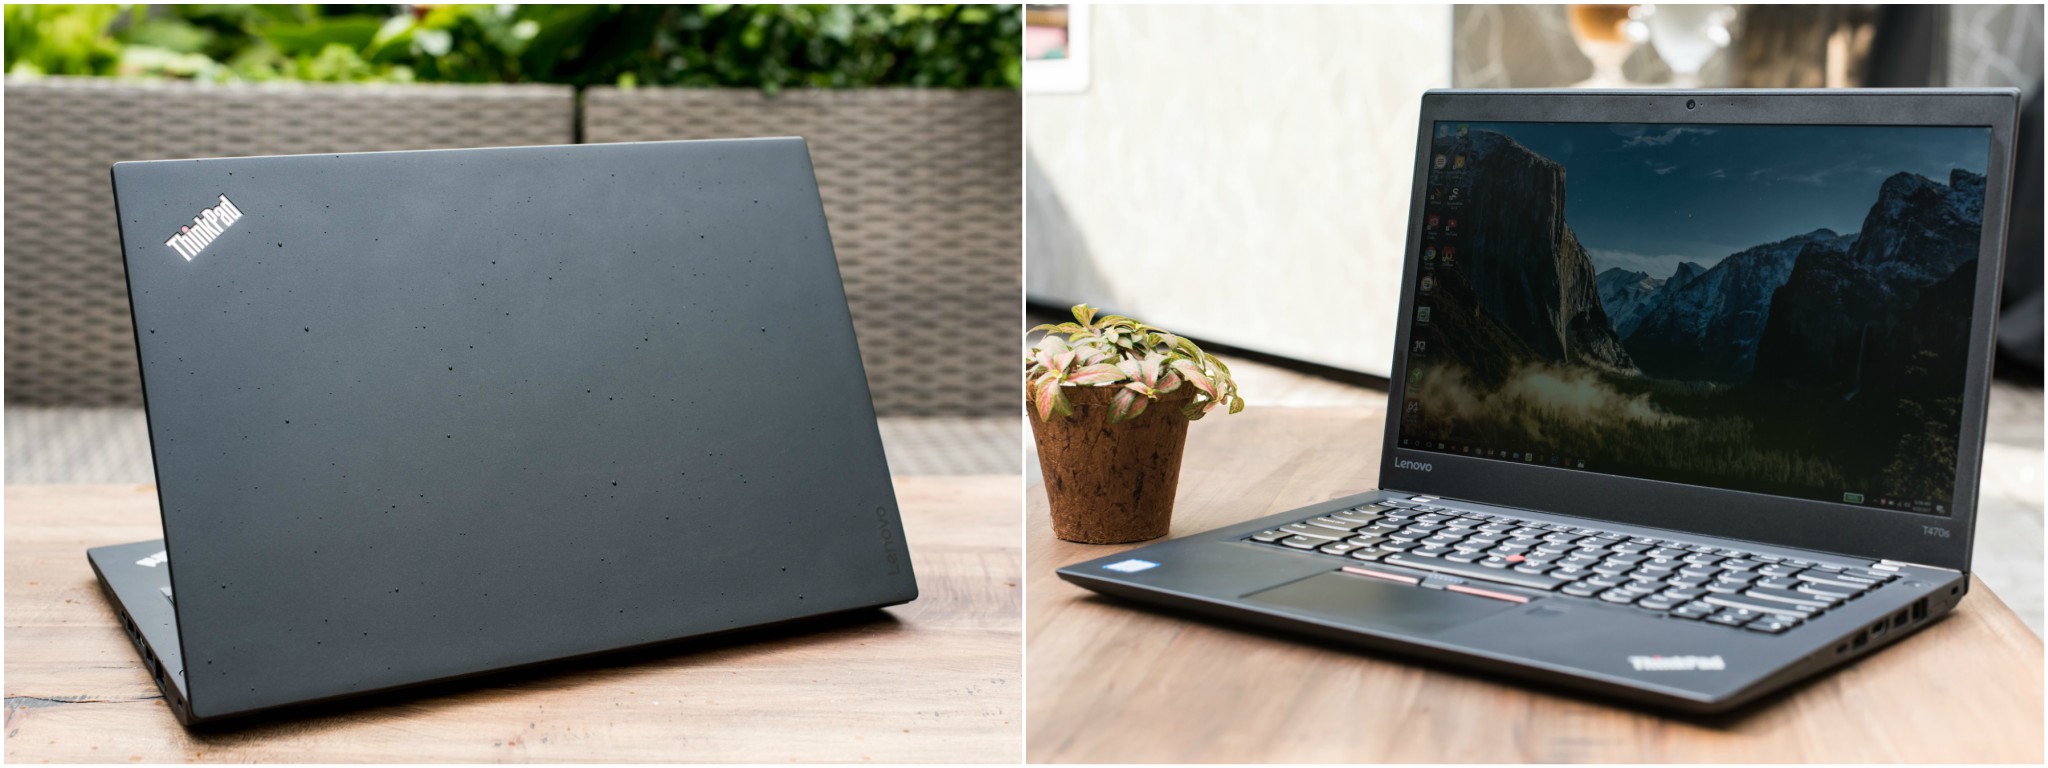 Đánh giá ThinkPad T470s chính hãng: đậm chất dòng T, hiệu năng tốt, pin 6 giờ, giá 28,9 triệu